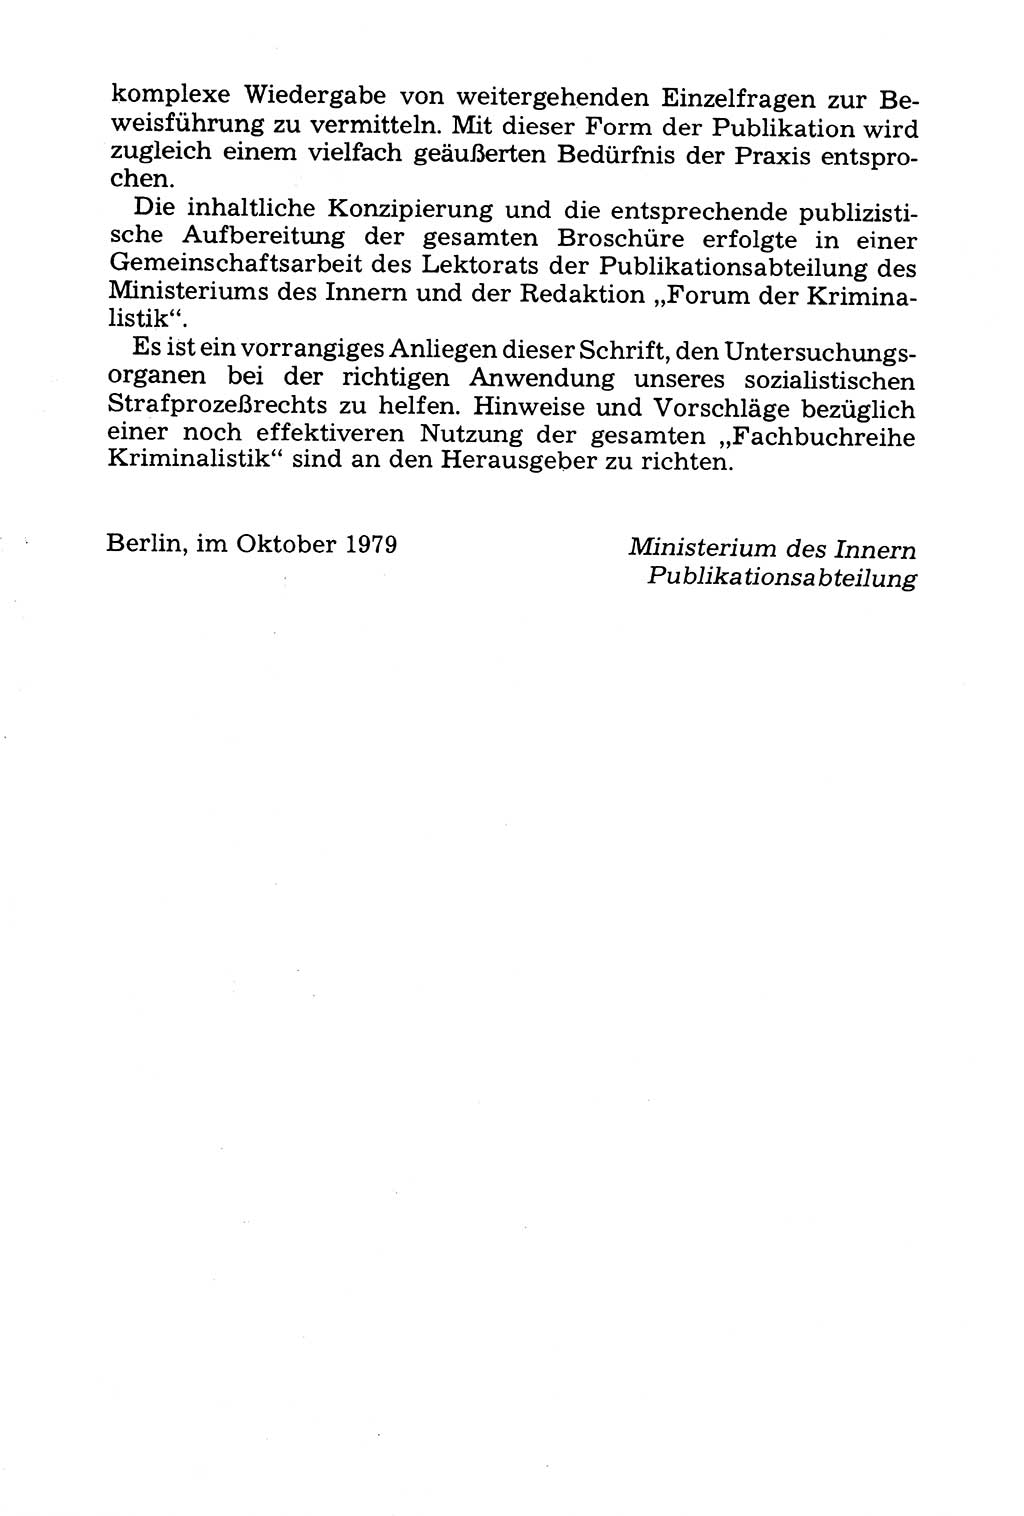 Grundfragen der Beweisführung im Ermittlungsverfahren [Deutsche Demokratische Republik (DDR)] 1980, Seite 10 (Bws.-Fhrg. EV DDR 1980, S. 10)